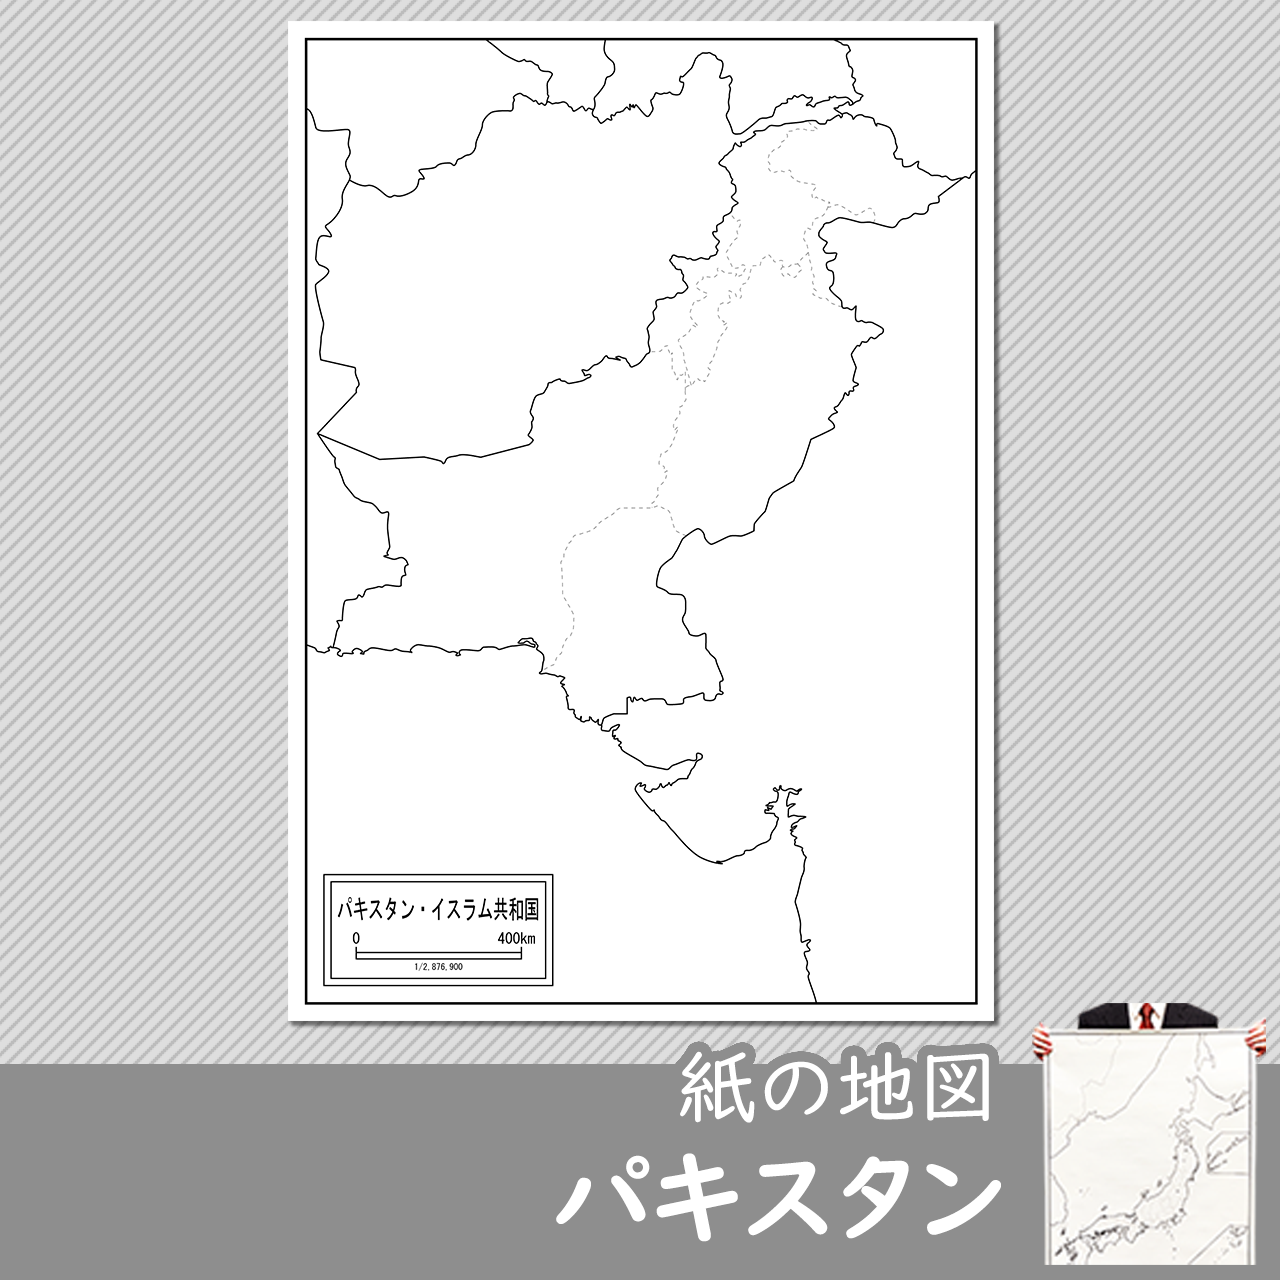 パキスタンの紙の白地図のサムネイル